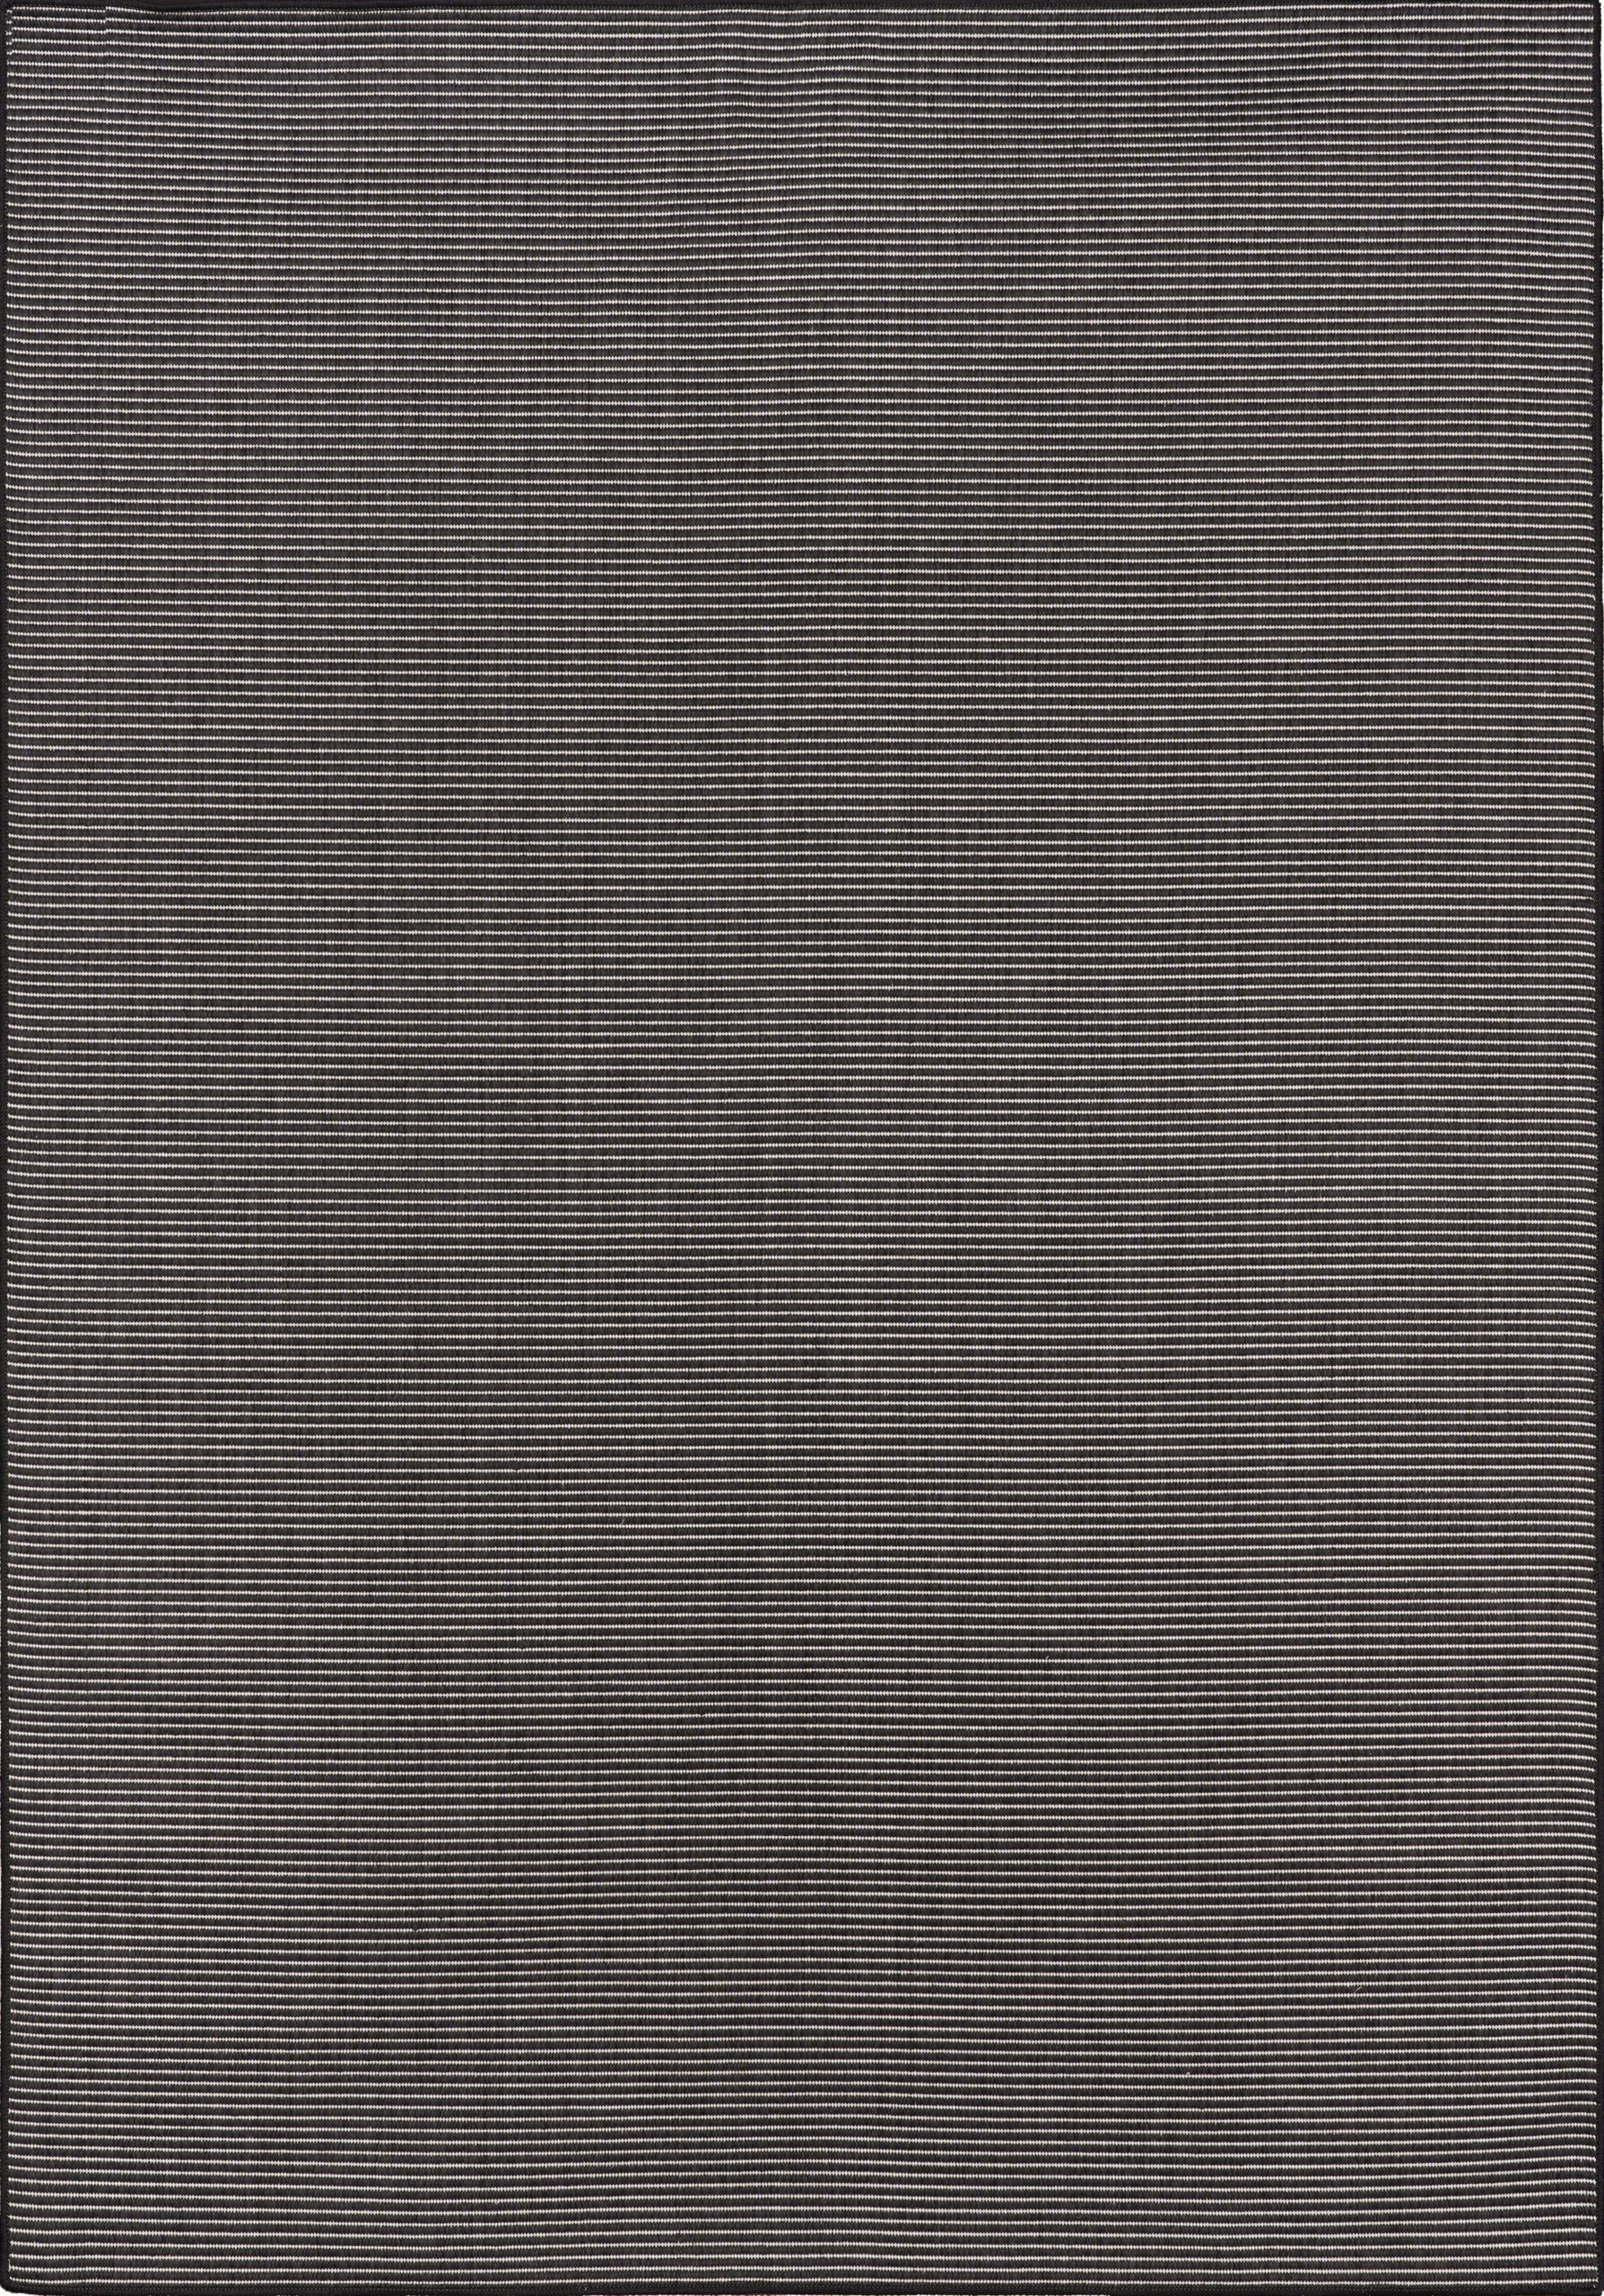 Χαλί 4 εποχών άσπρη μαύρη ψάθα Maestro 9002-90 - ΡΟΤΟΝΤΑ  1,60x1,60 Colore Colori